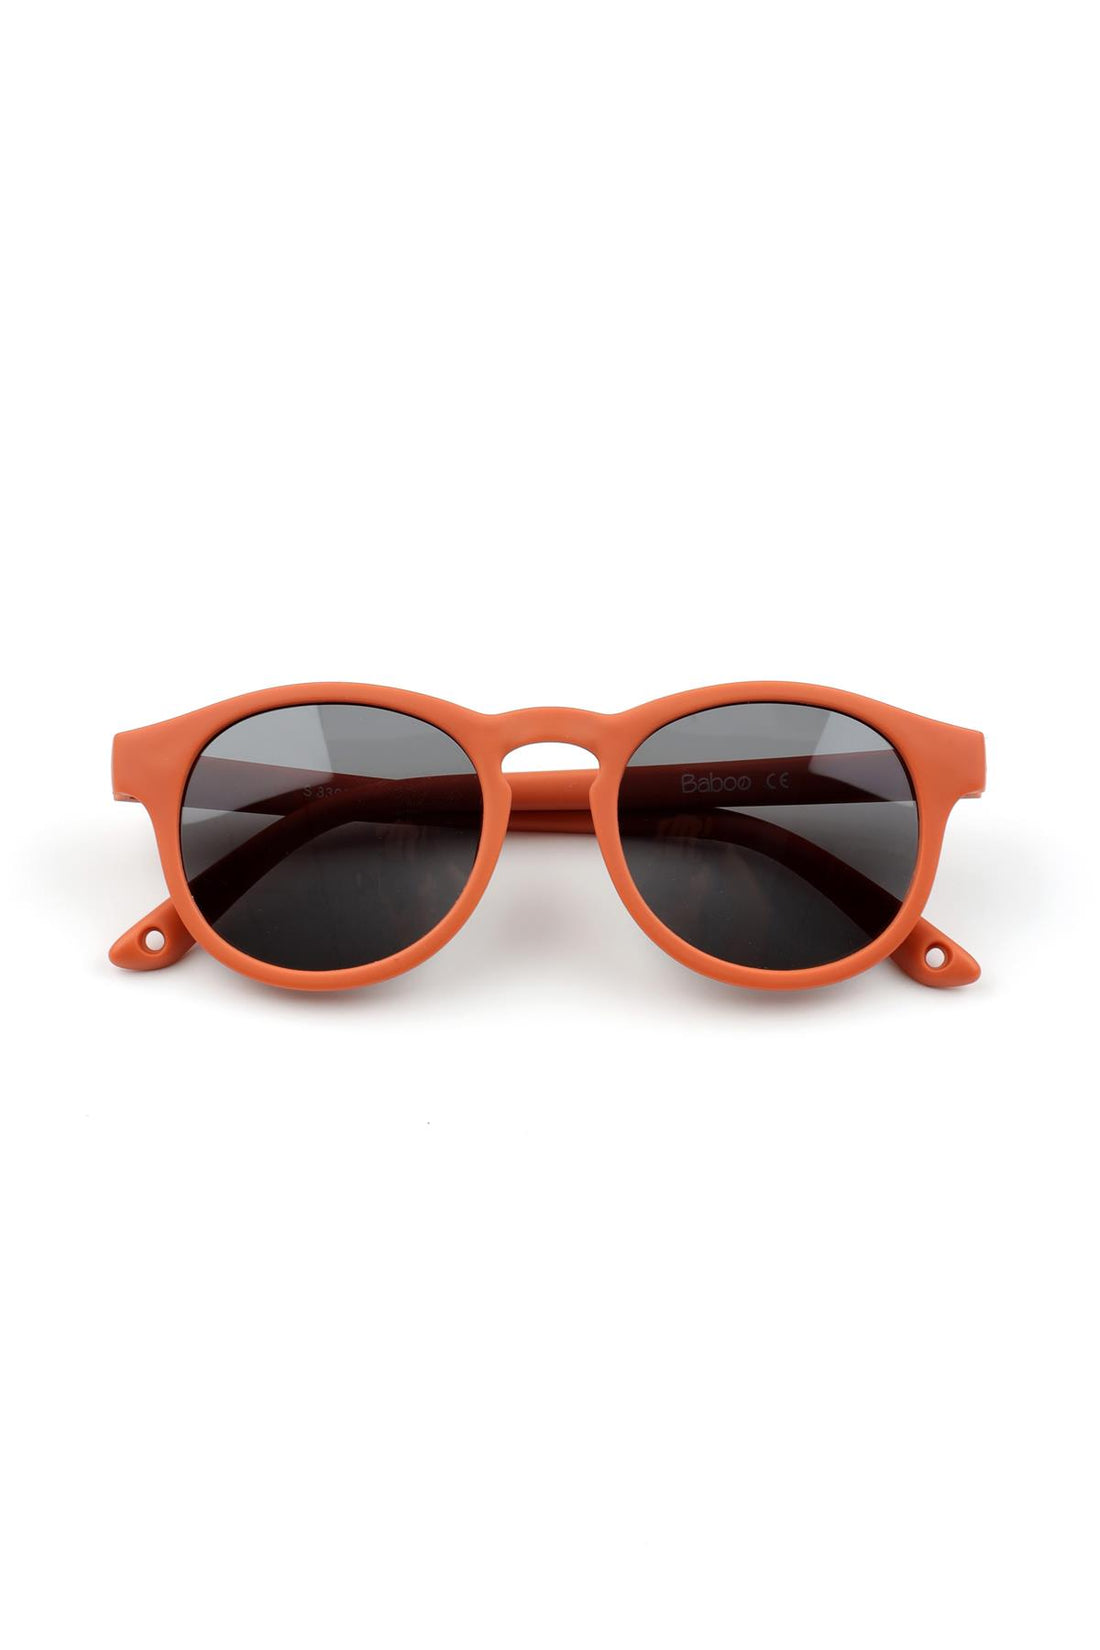 نظارة شمسية للأطفال متوسطة الحجم وخفيفة للغاية باللون البرتقالي